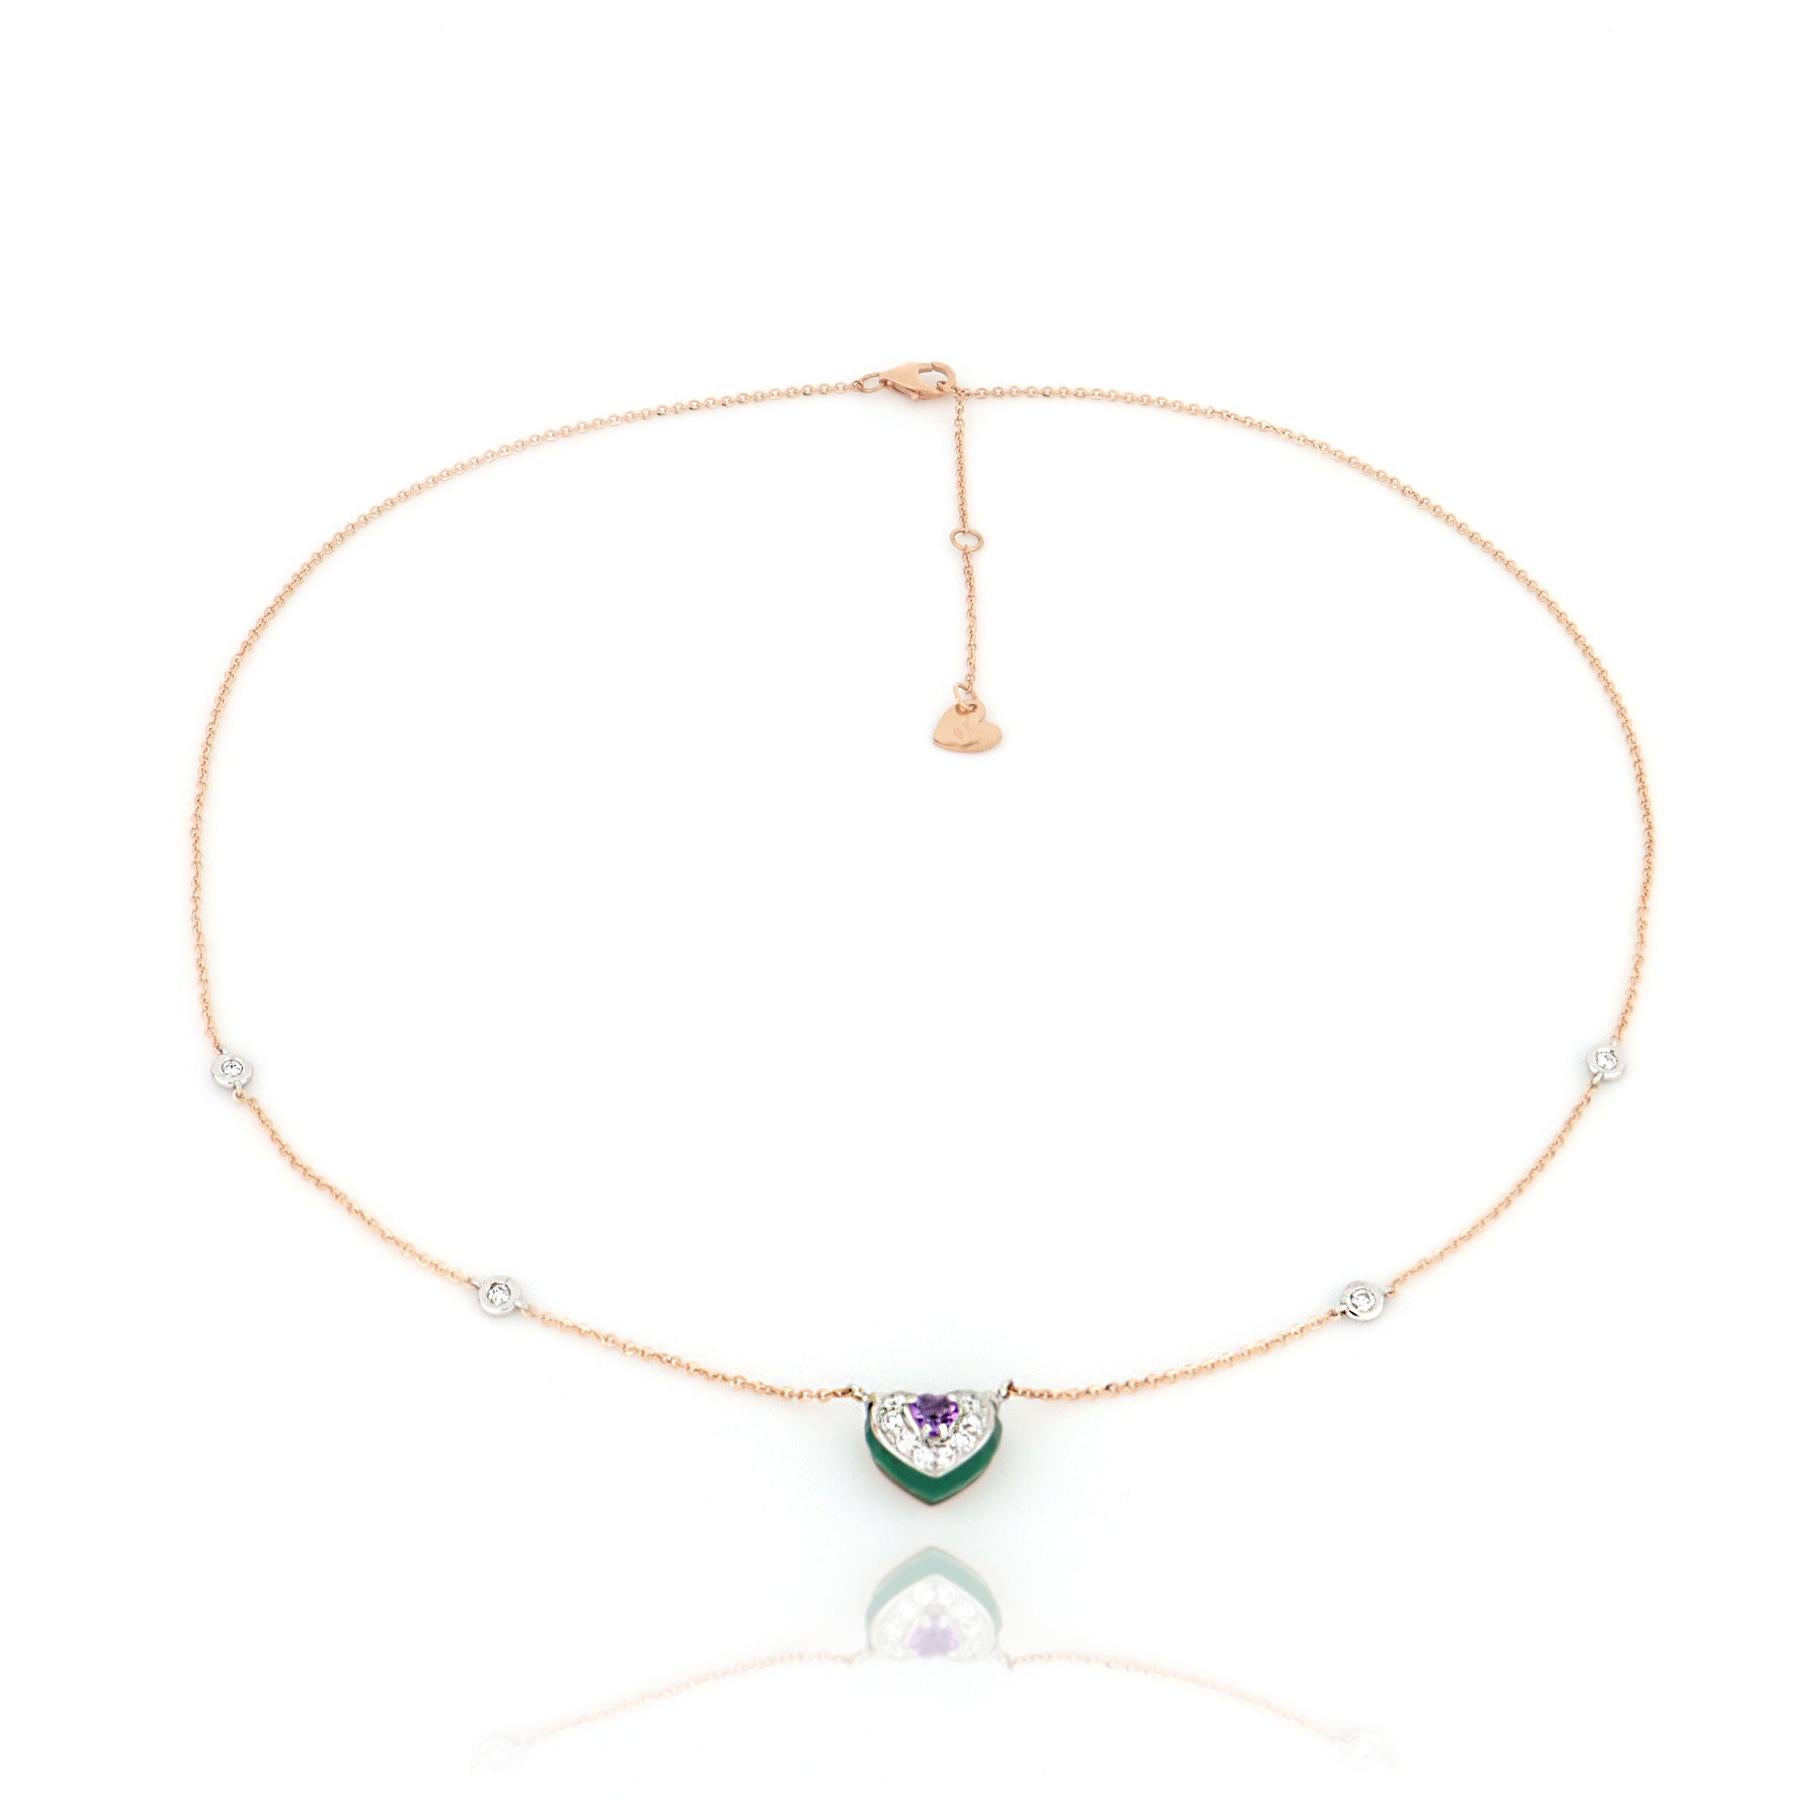 Une géométrie fraîche et ludique pour le centre de ce collier en or rose. Améthyste violette et onyx vert dans une combinaison de contrastes rehaussée de diamants brillants.

Collier longueur 43 cm avec extension à 45 cm et 48 cm, chaîne diamantée